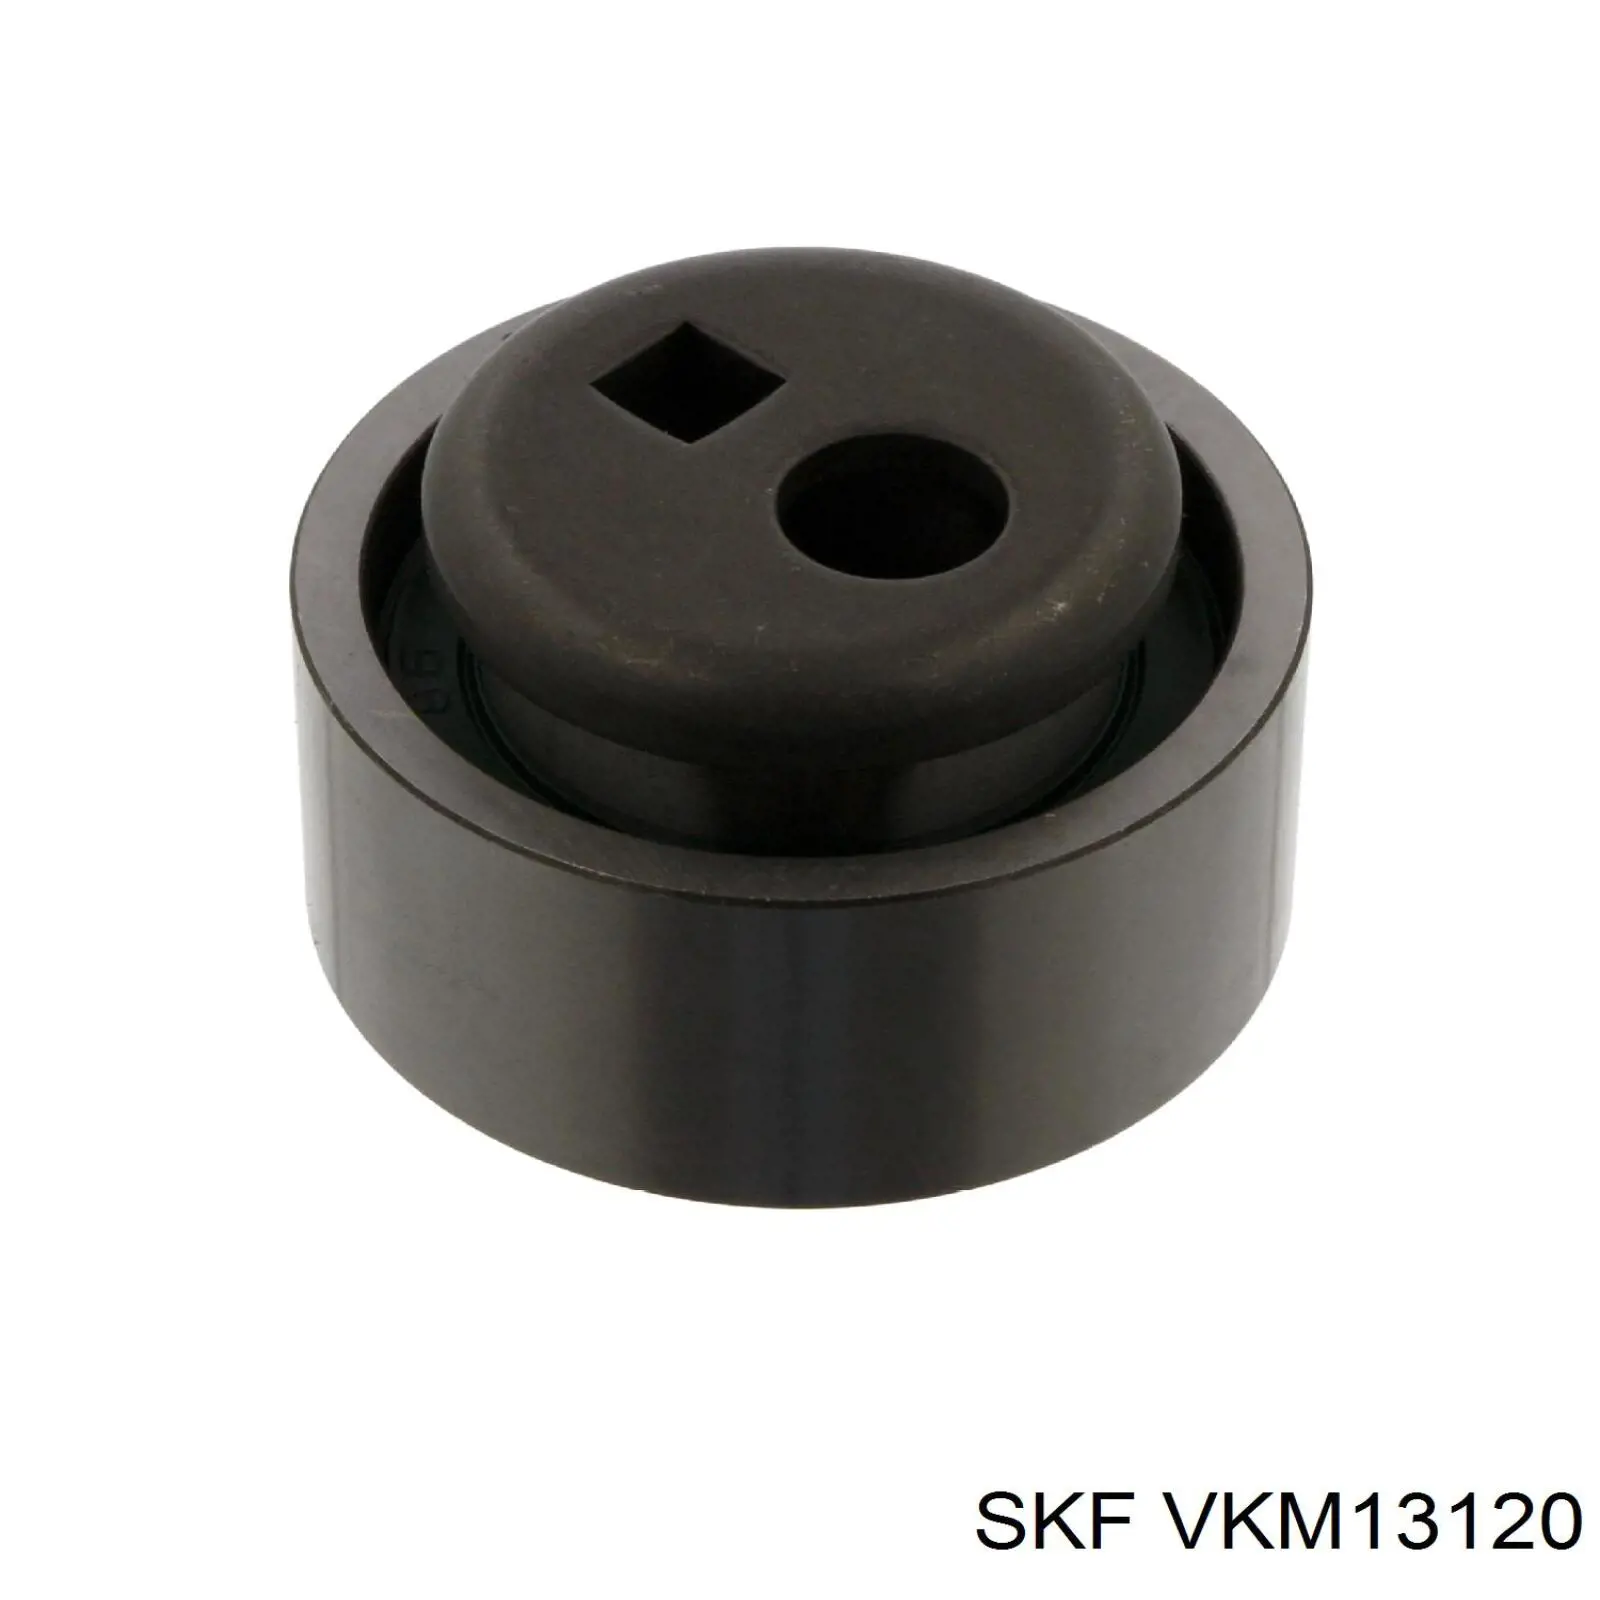 VKM 13120 SKF rodillo, cadena de distribución